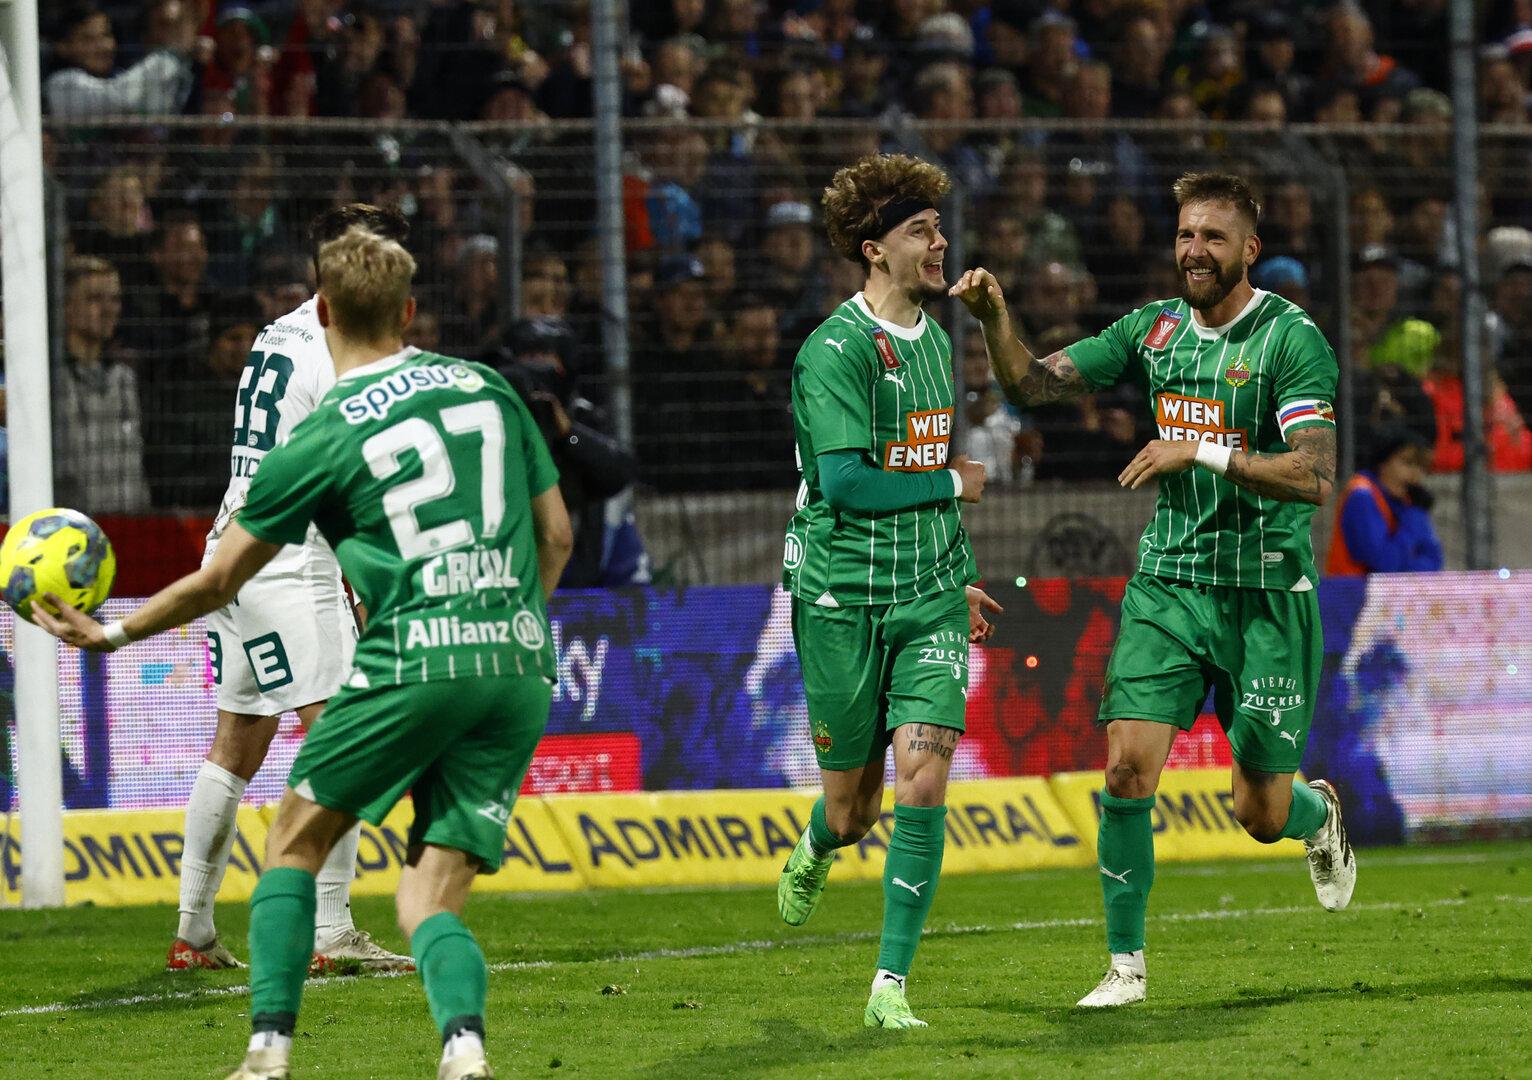 Keine Probleme in Leoben - Rapid nach 3:0-Sieg im ÖFB-Cupfinale